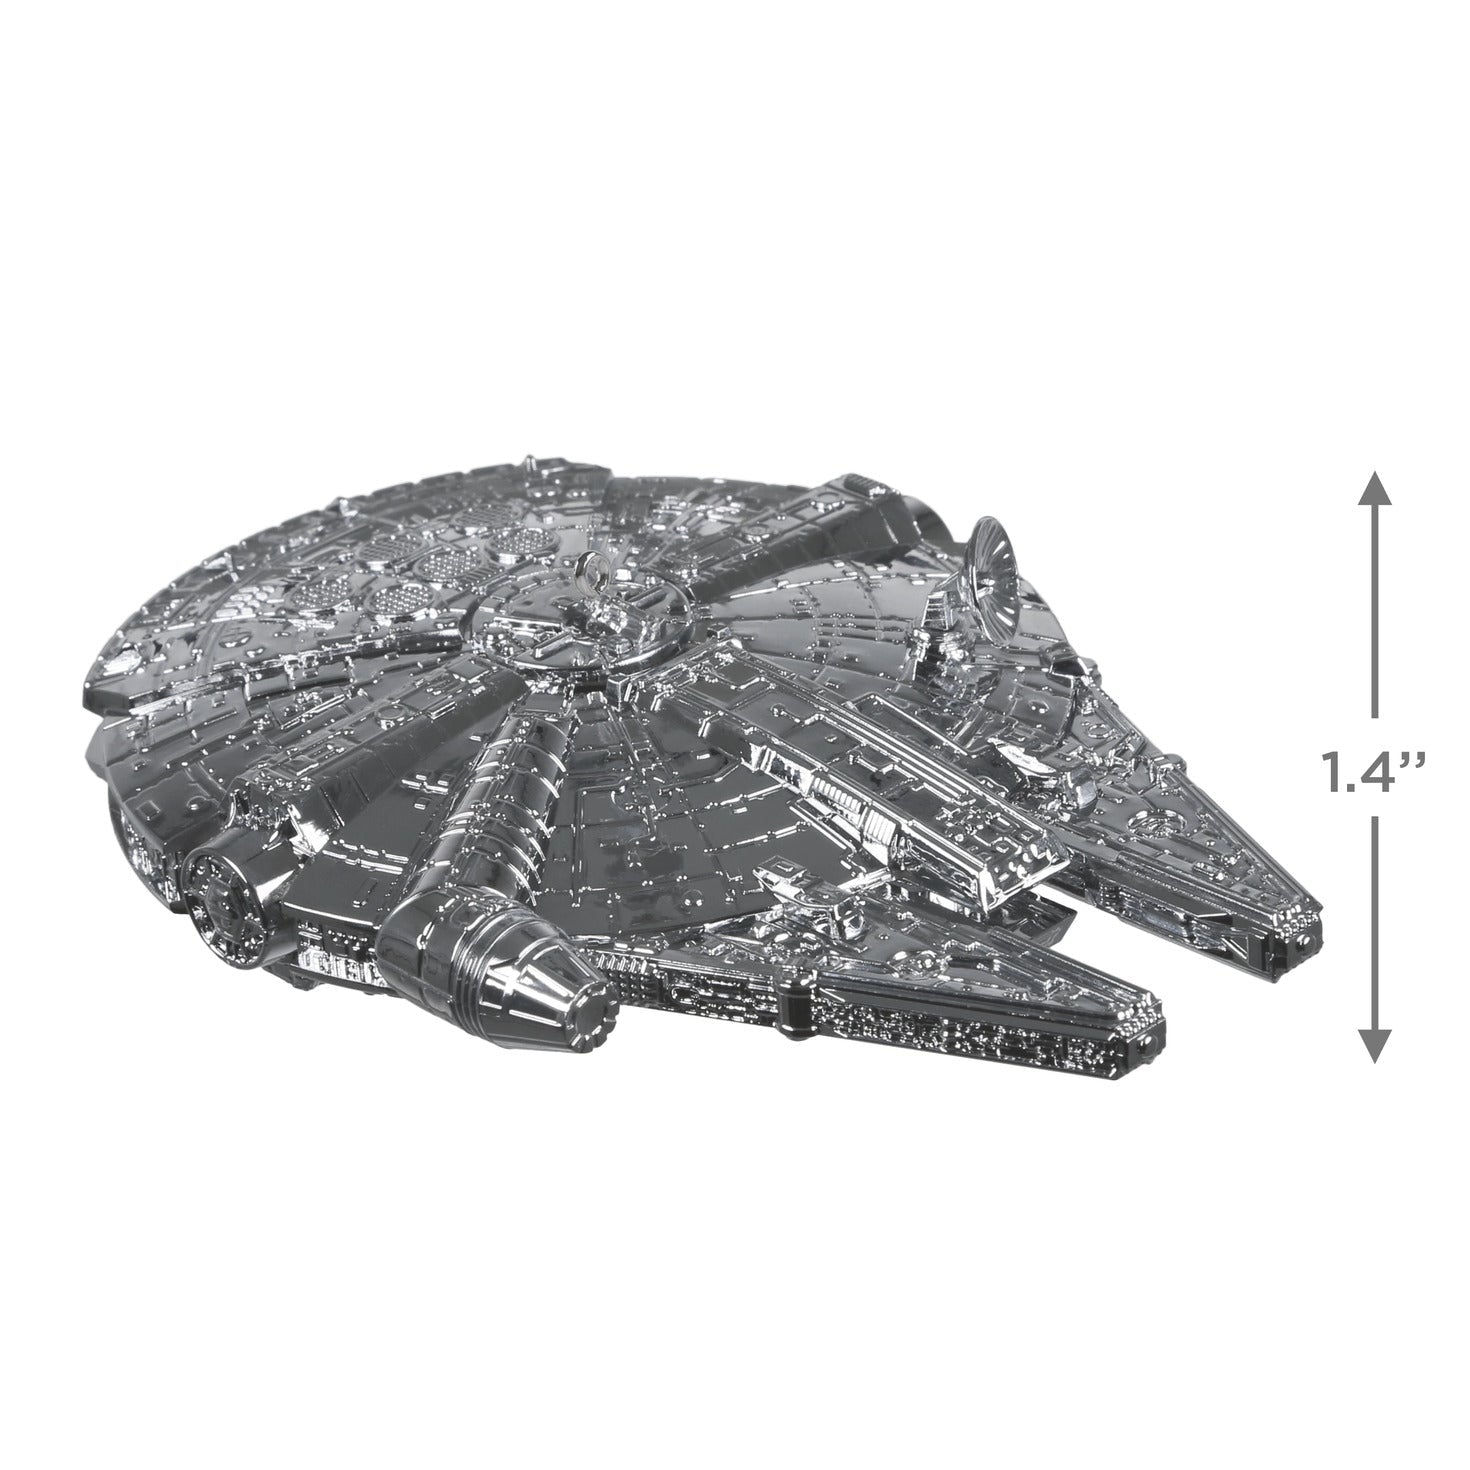 Star Wars Millennium Falcon, Metal, 2021 Keepsake Ornament